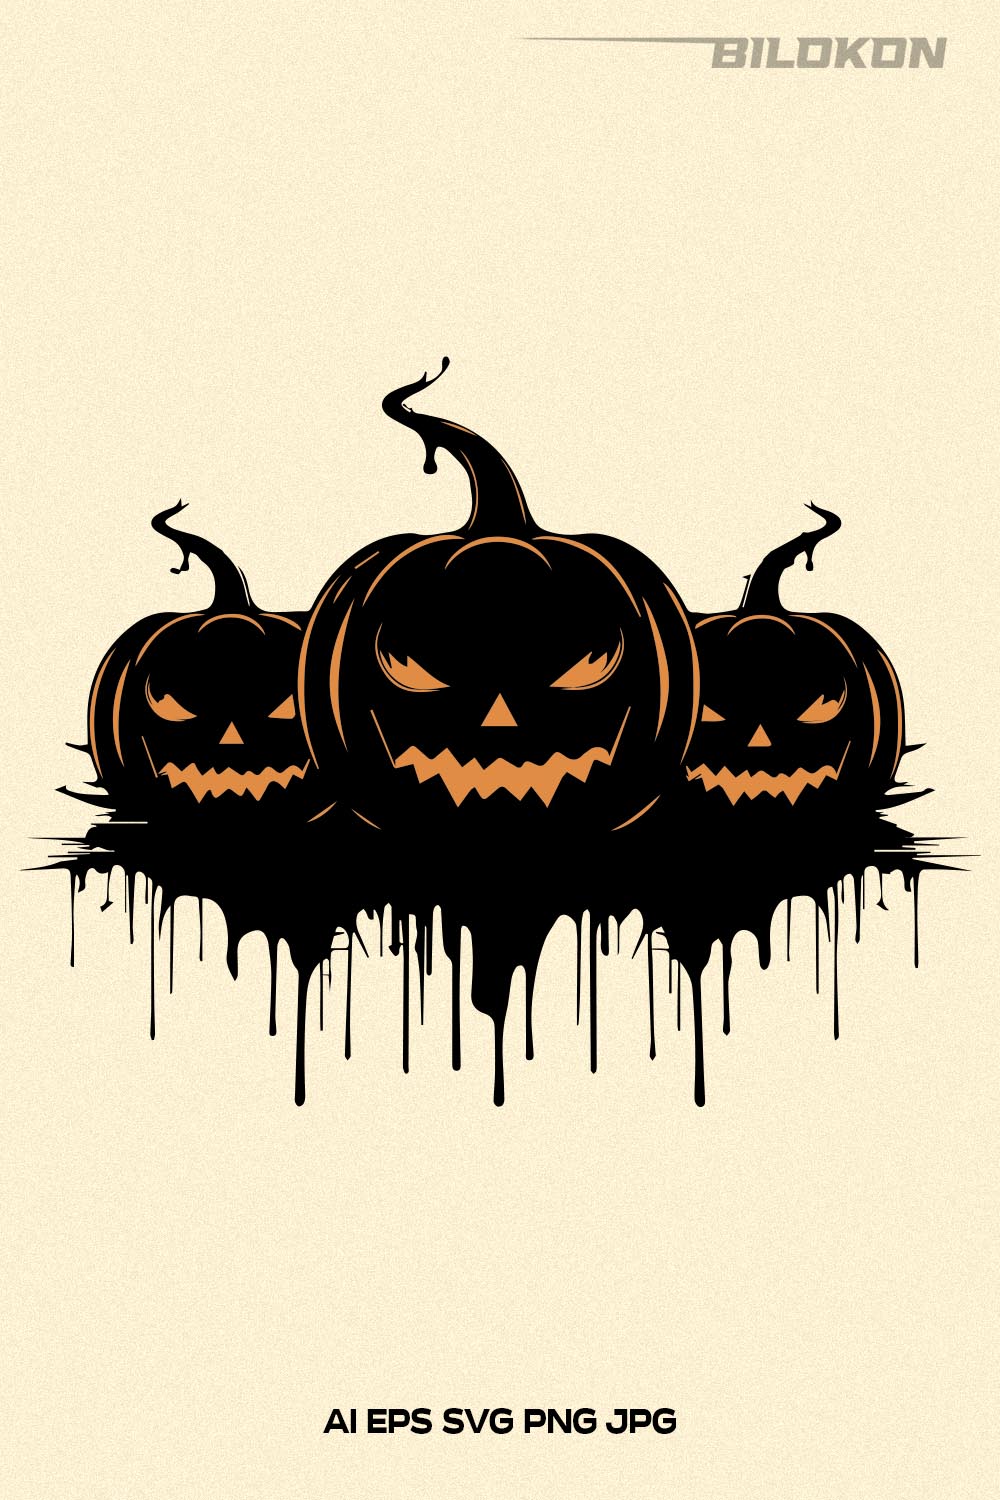 Pumpkin Mask SVG, Halloween Mask Design SVG Cut File